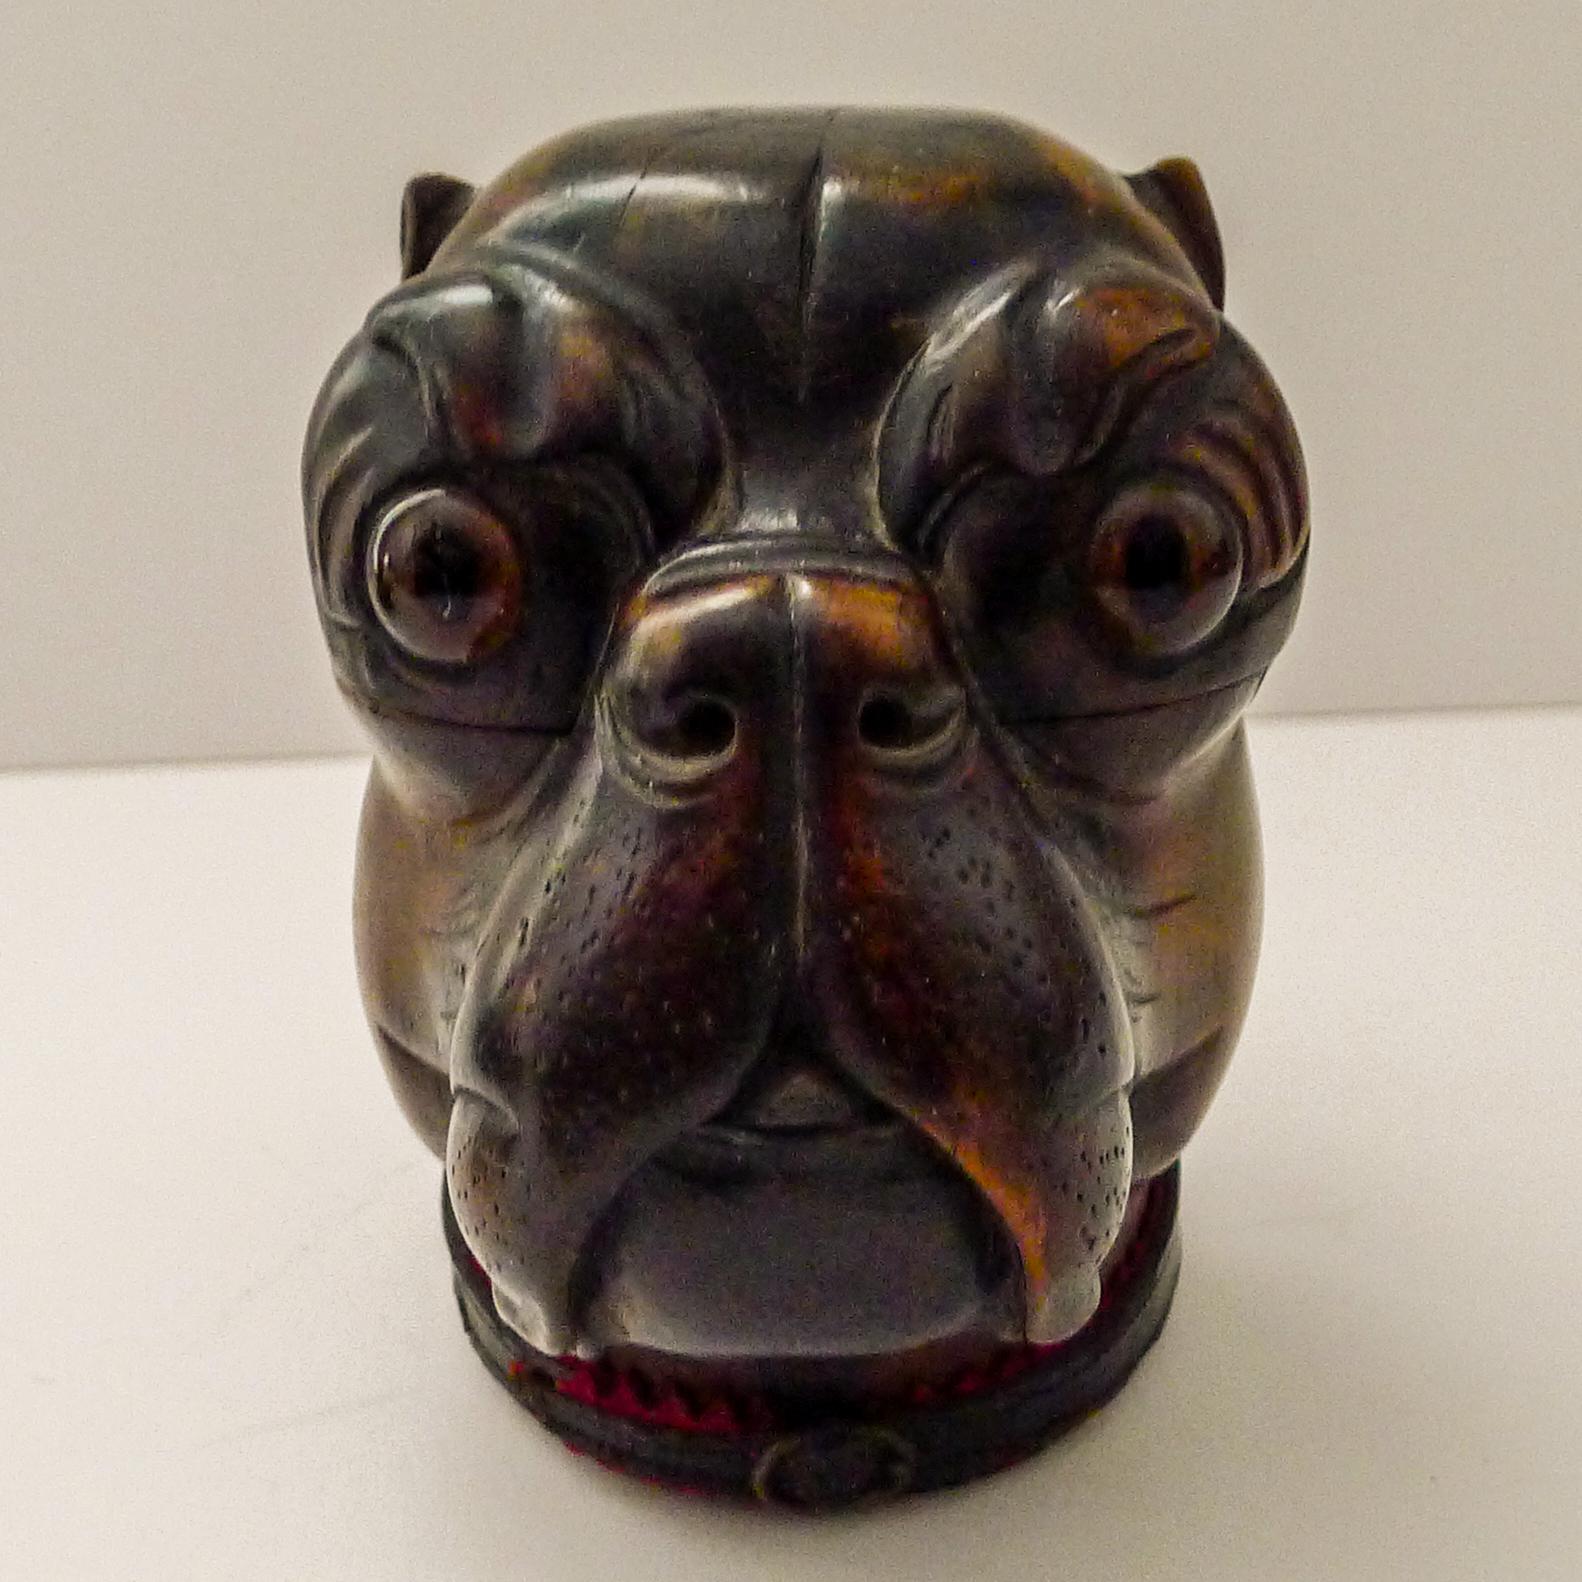 Un magnifique et très grand exemple d'encrier figuratif de la Forêt-Noire en forme de tête de chien, avec une belle patine brillante.

Il conserve ses grands yeux de verre d'origine, sans dommage. Le collier d'origine est également intact, avec de